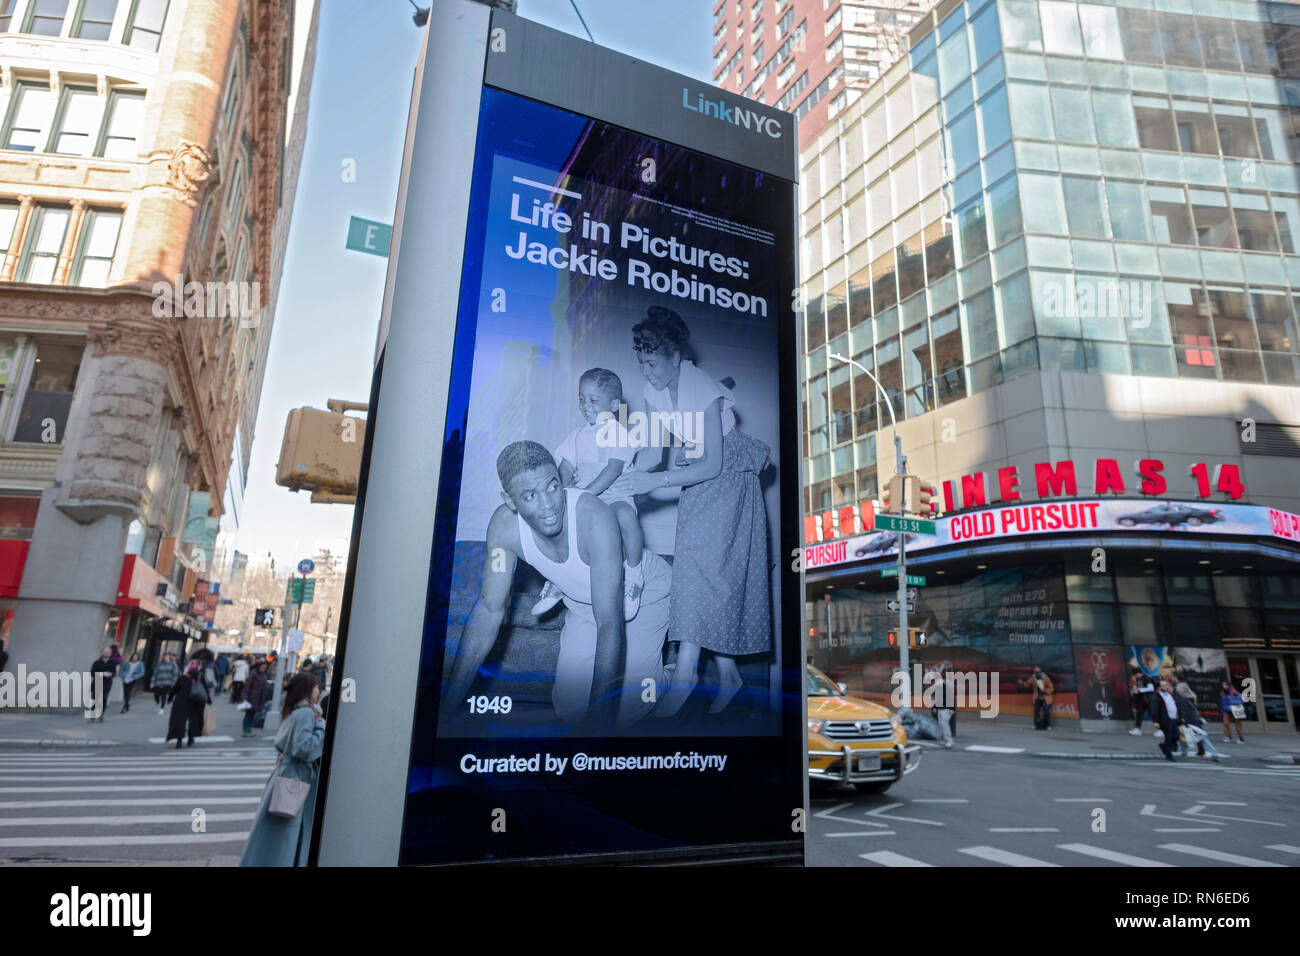 Une photo sur un écran d'un LINKNYC publicité Jackie Robinson photo exposition au Musée de la ville de New York pour célébrer son 100e anniversaire. Banque D'Images